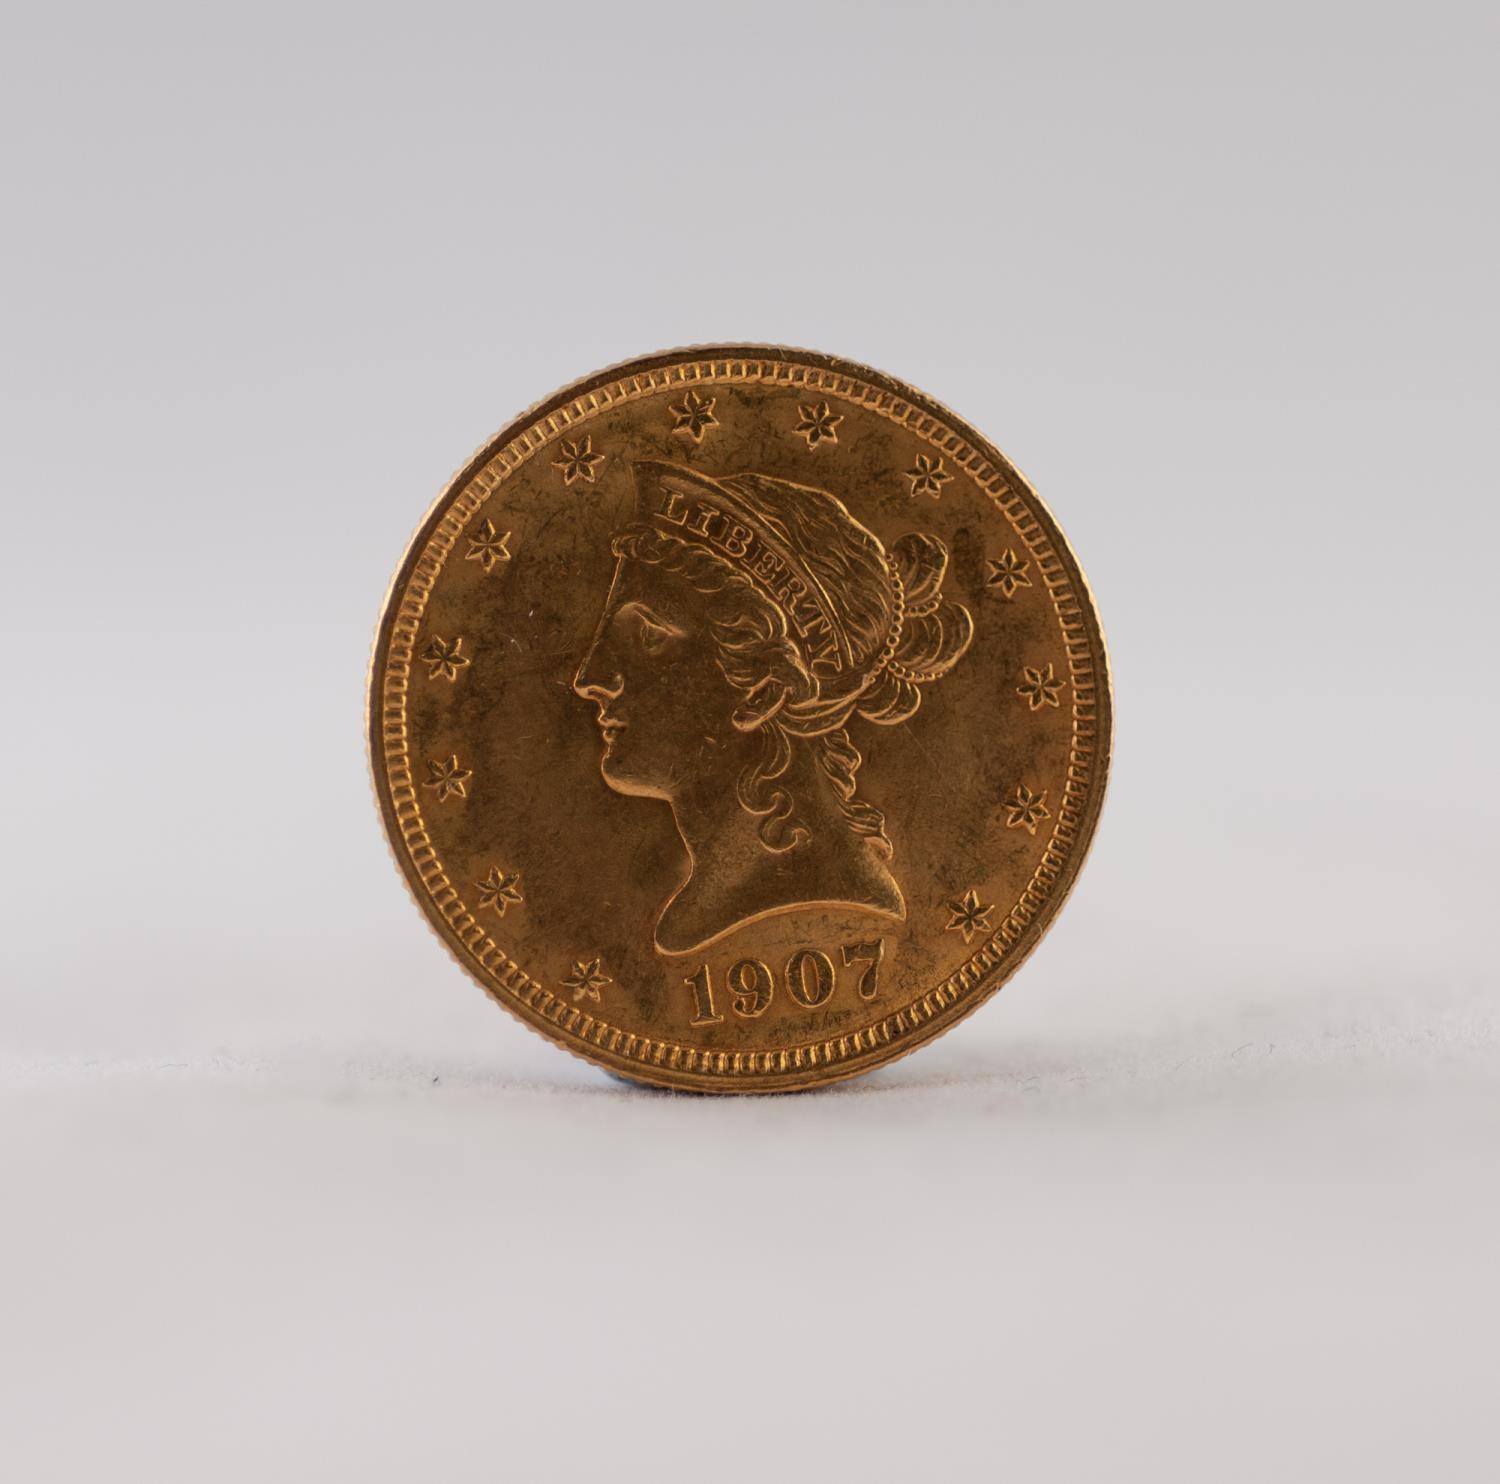 USA 1907 LIBERTY HEAD TEN DOLLAR GOLD COIN, 17gms (EF)